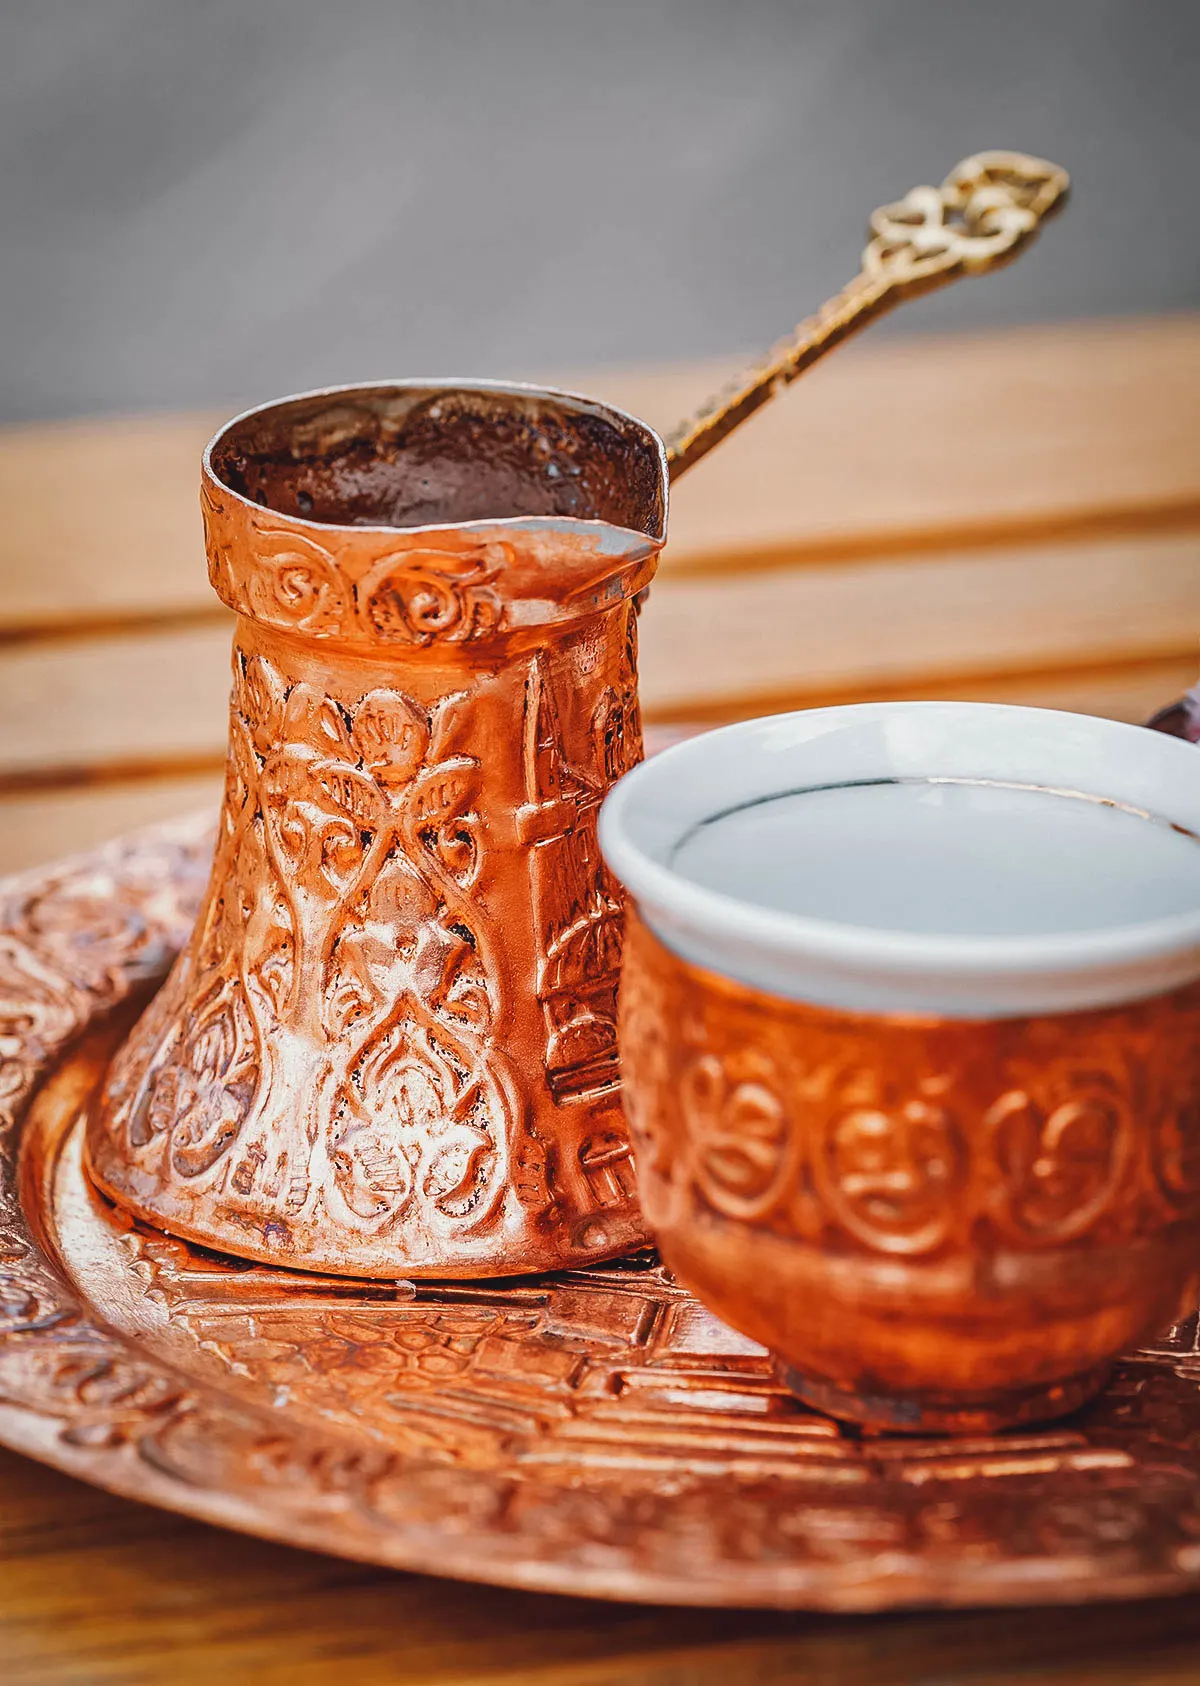 Bosanska kafa in decorative copper containers